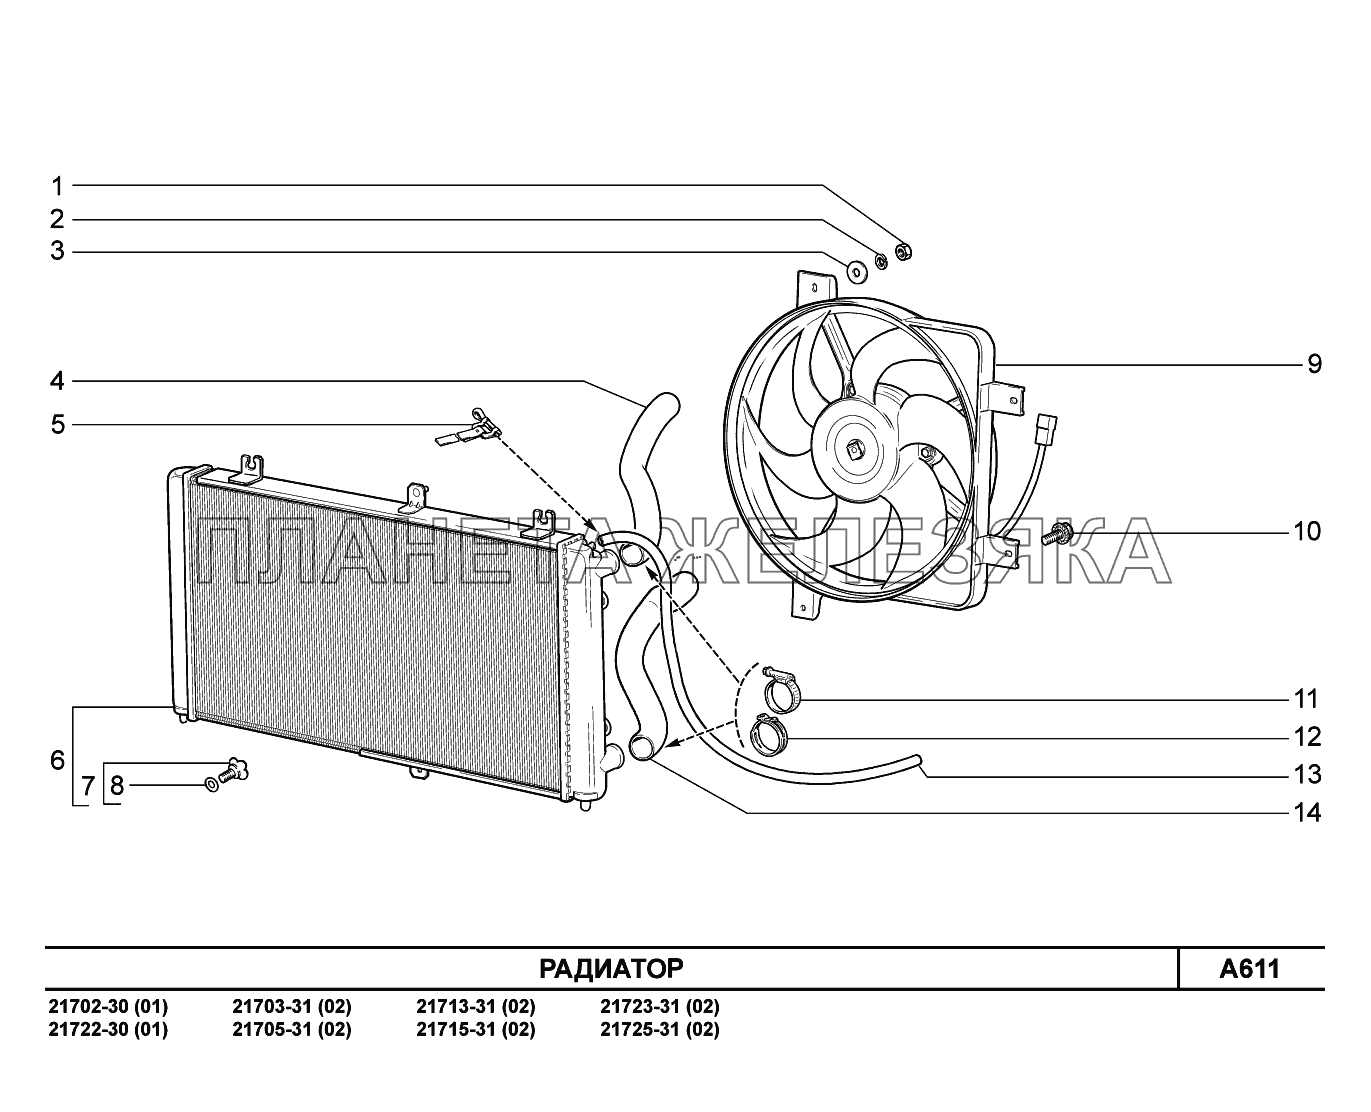 A611. Радиатор ВАЗ-2170 